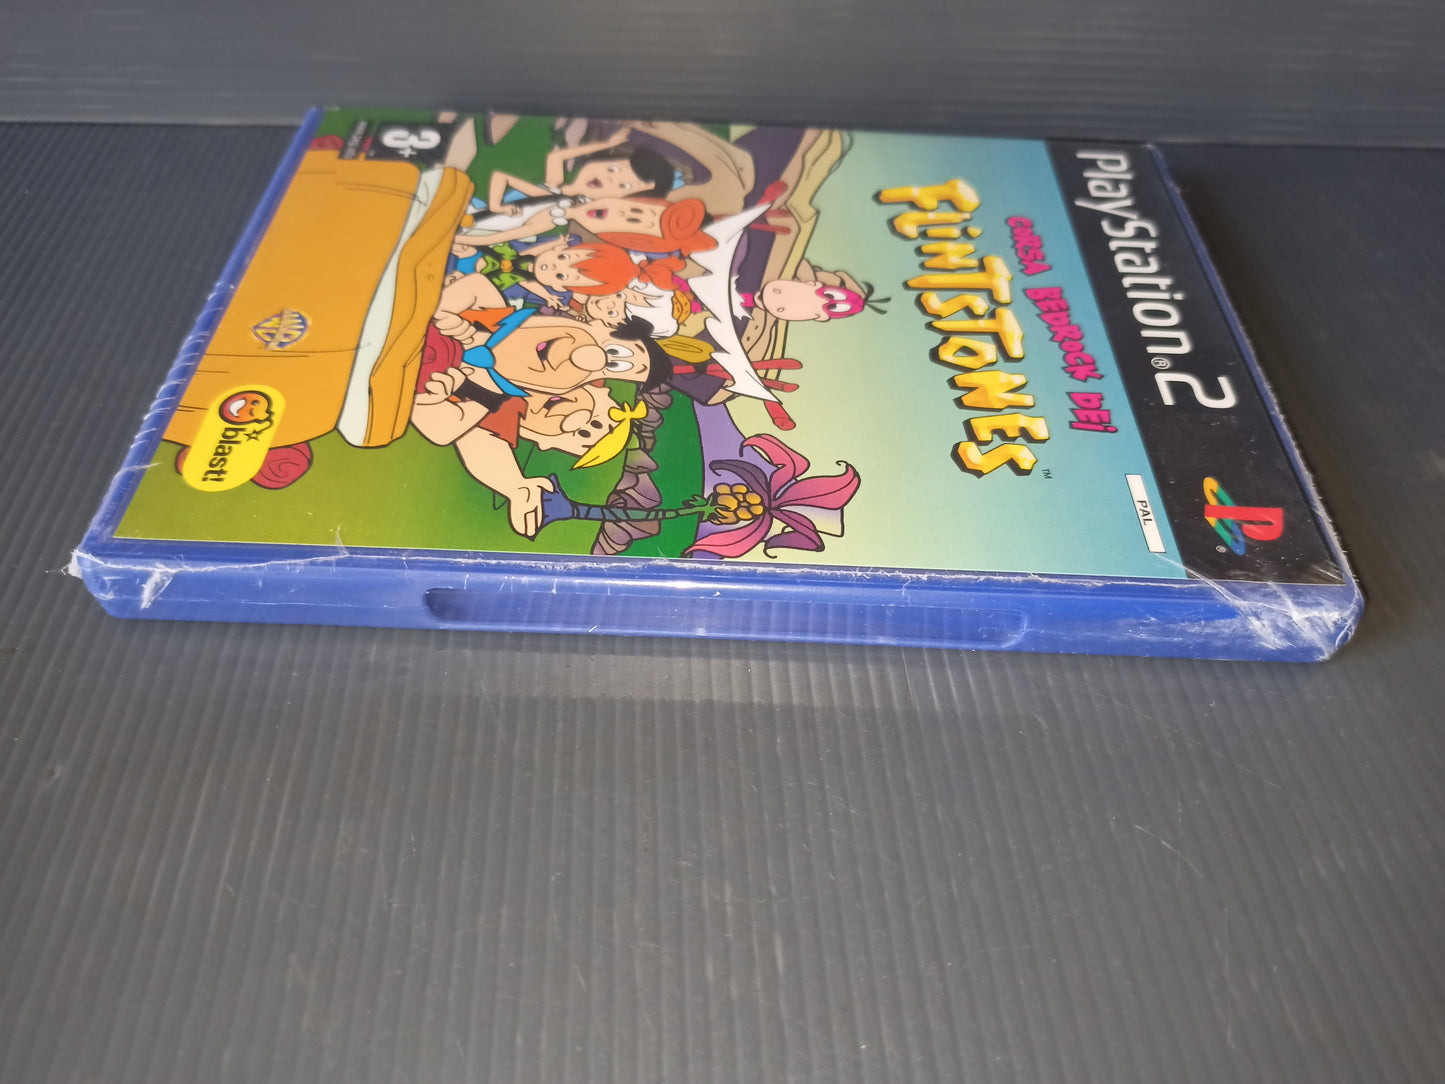 Bedrock Racing Video Game of The Flintstones Ps2, Sealed